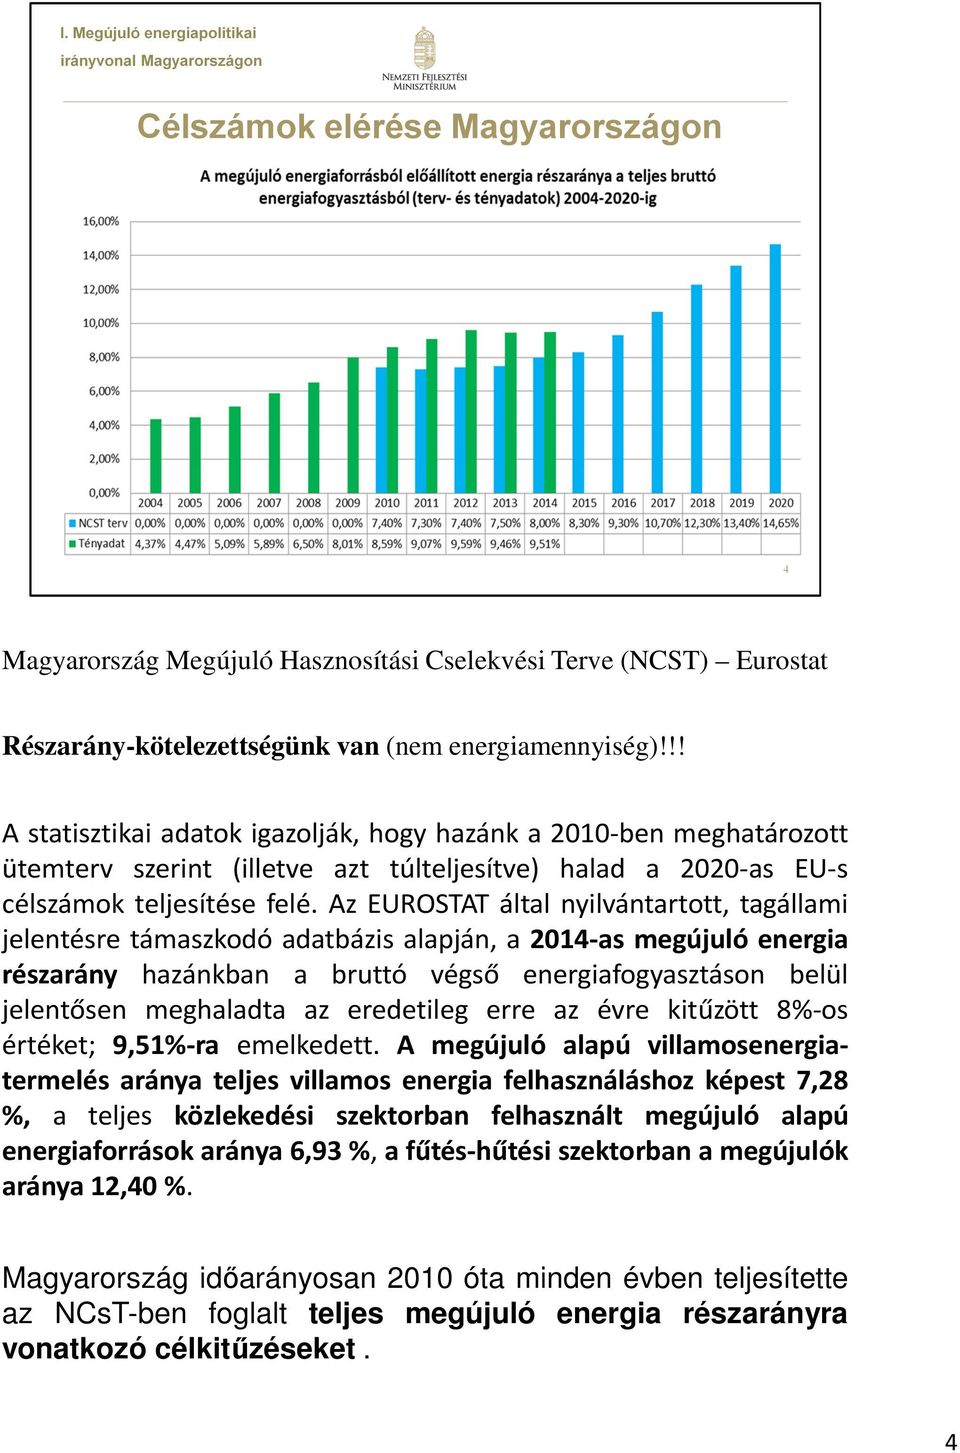 Az EUROSTAT által nyilvántartott, tagállami jelentésre támaszkodó adatbázis alapján, a 2014-as megújuló energia részarány hazánkban a bruttó végső energiafogyasztáson belül jelentősen meghaladta az